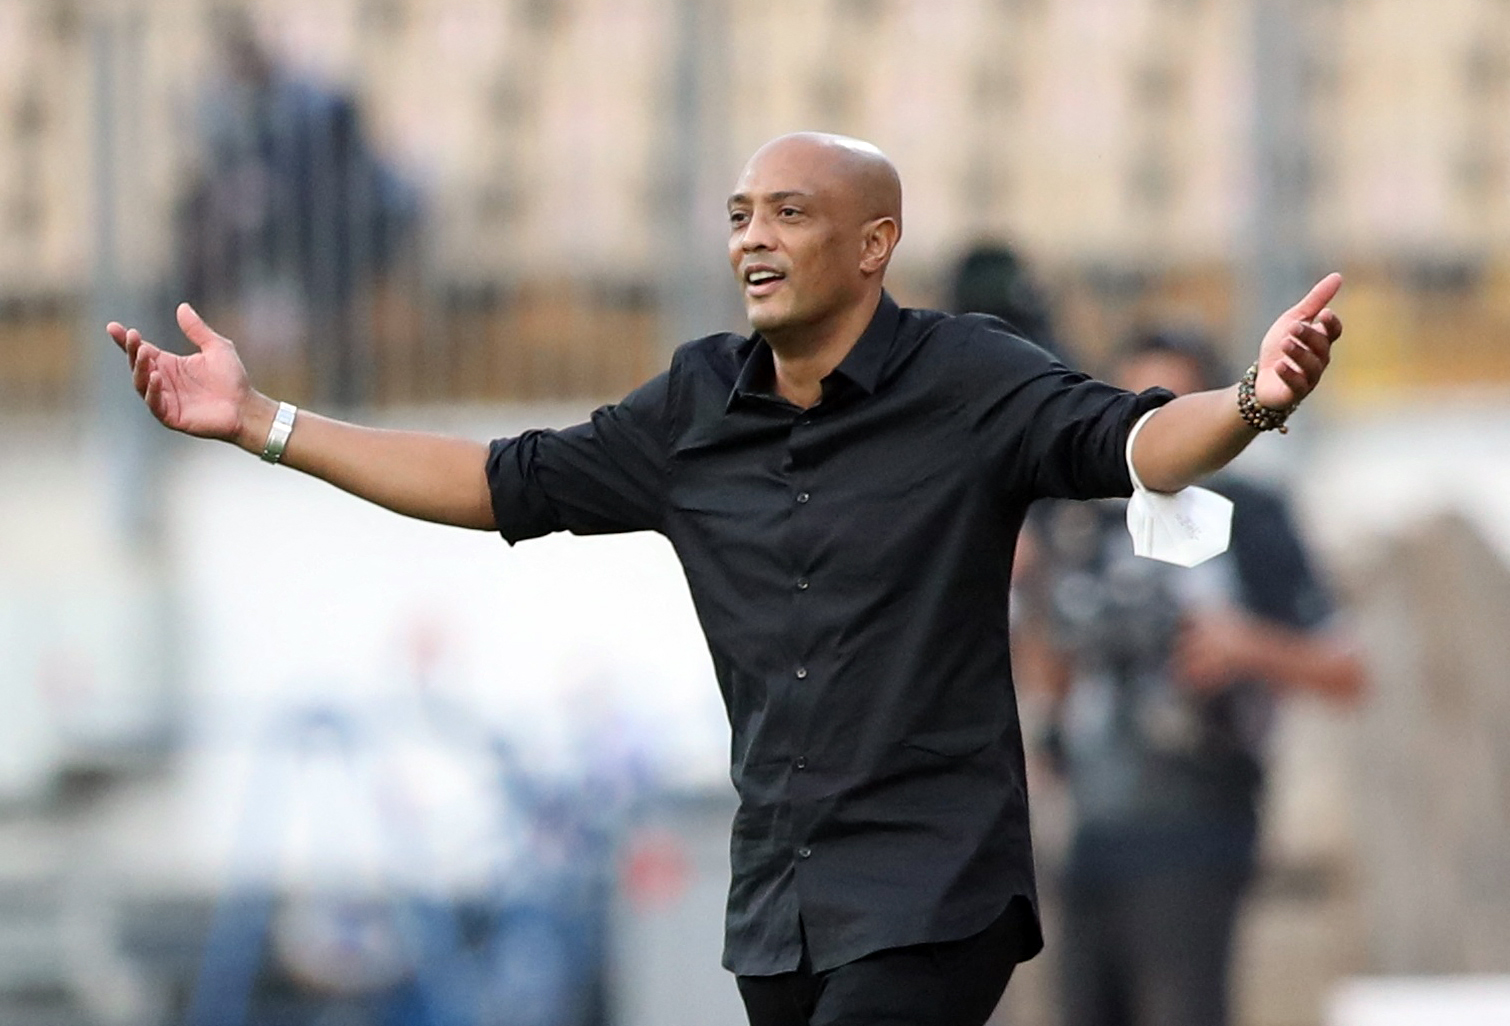 El entrenador Amir Abdou figura entre los contagiados (REUTERS/Mohamed Abd El Ghany)